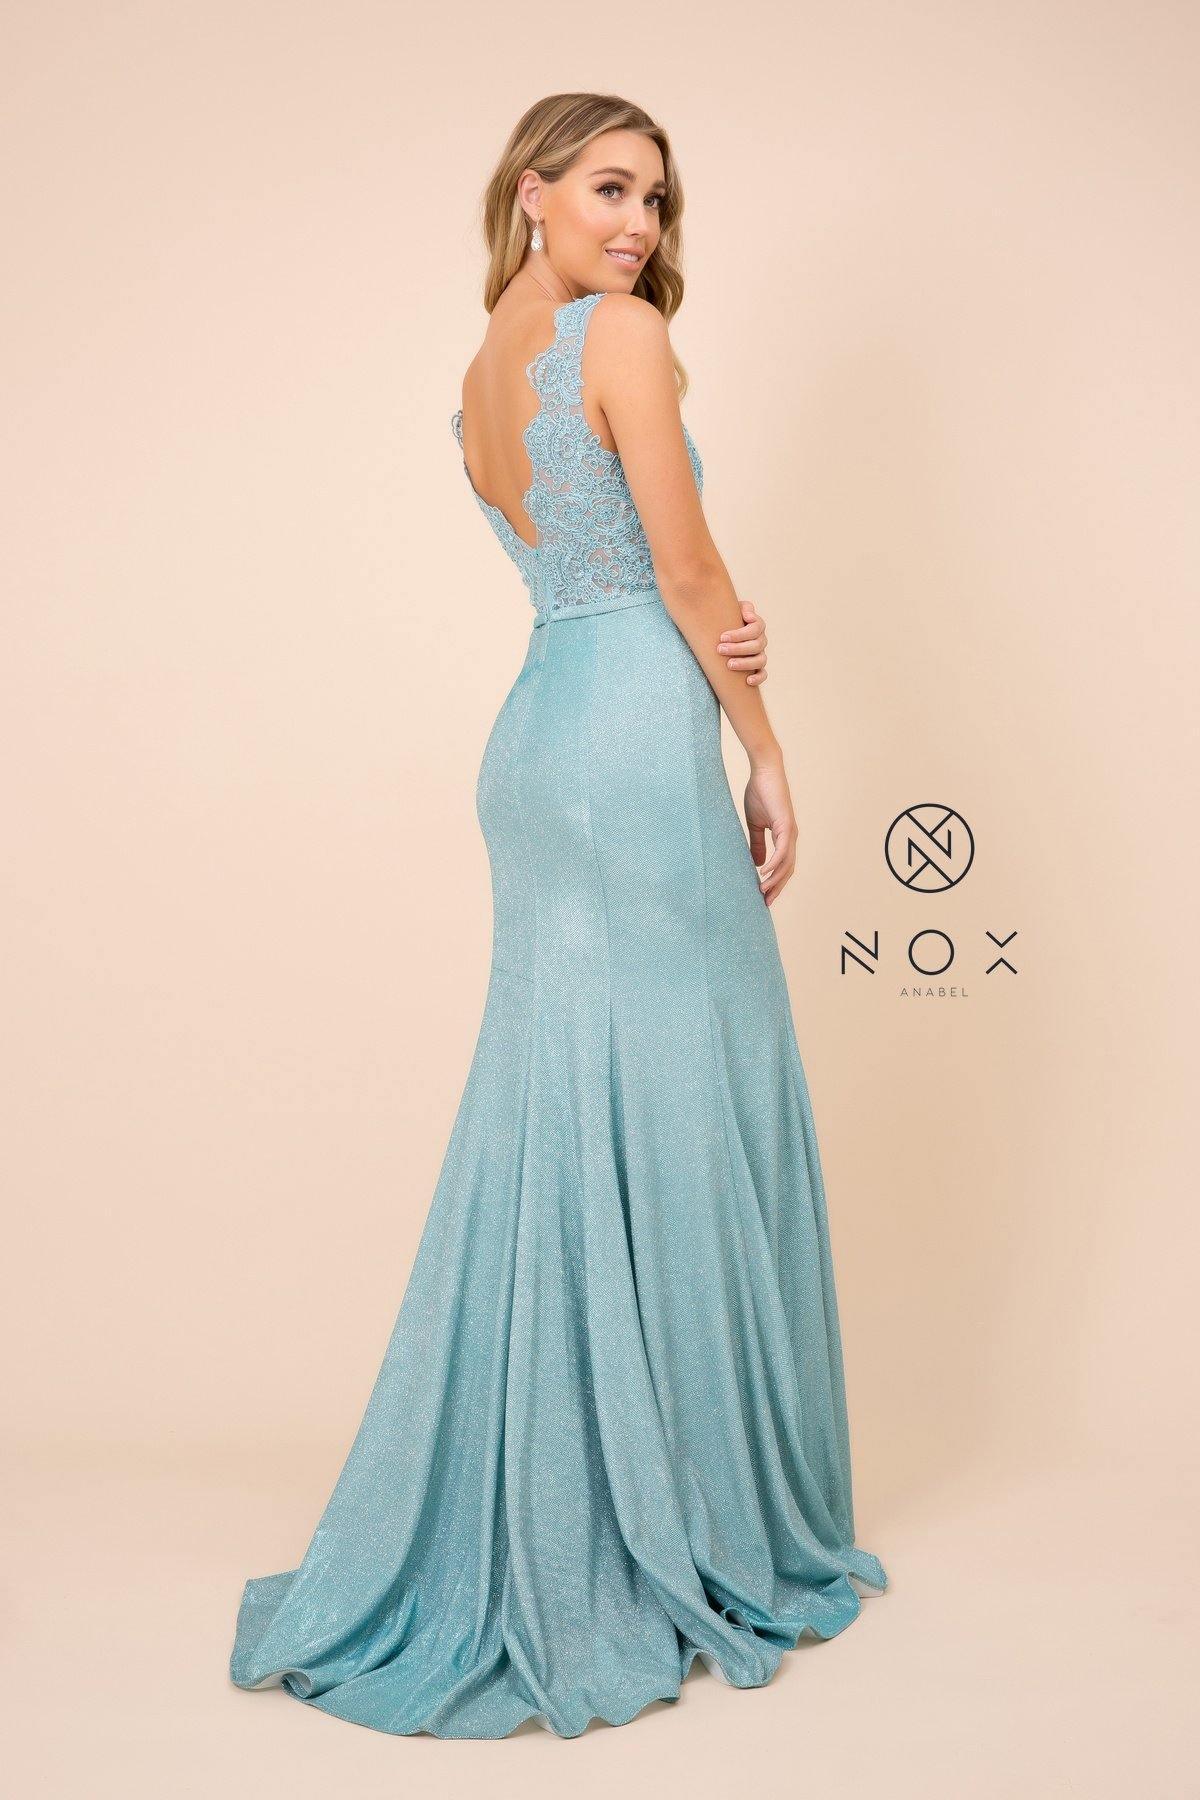 Long Formal Sleeveless Metallic Skirt Prom Dress Turquoise